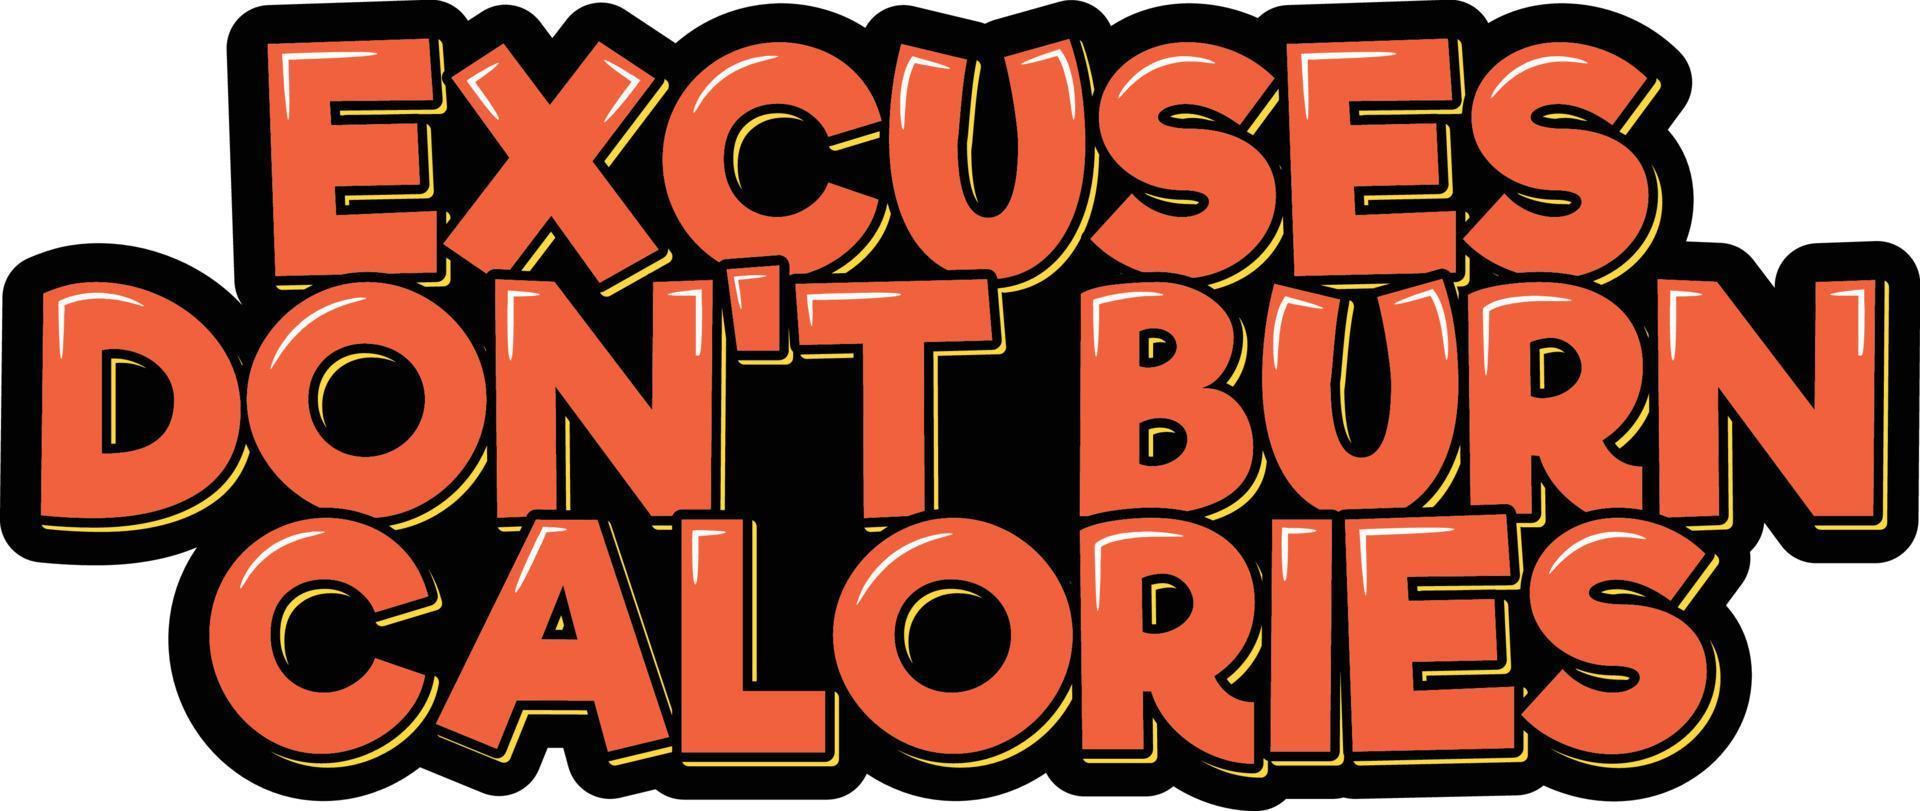 las excusas no queman calorias vector